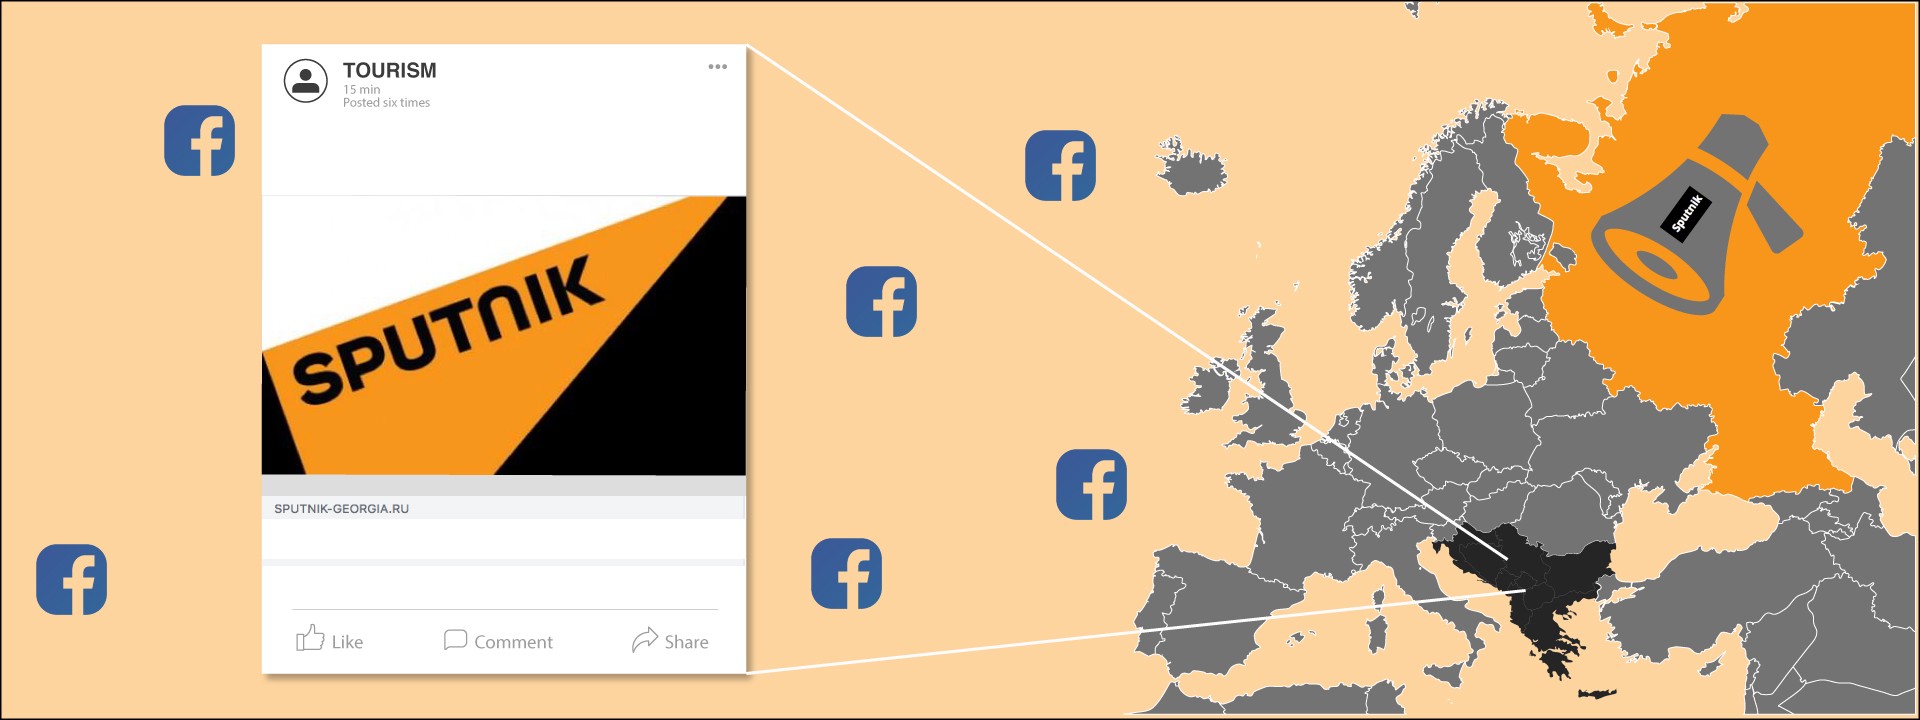 Facebook’s Sputnik Takedown — Top Takeaways